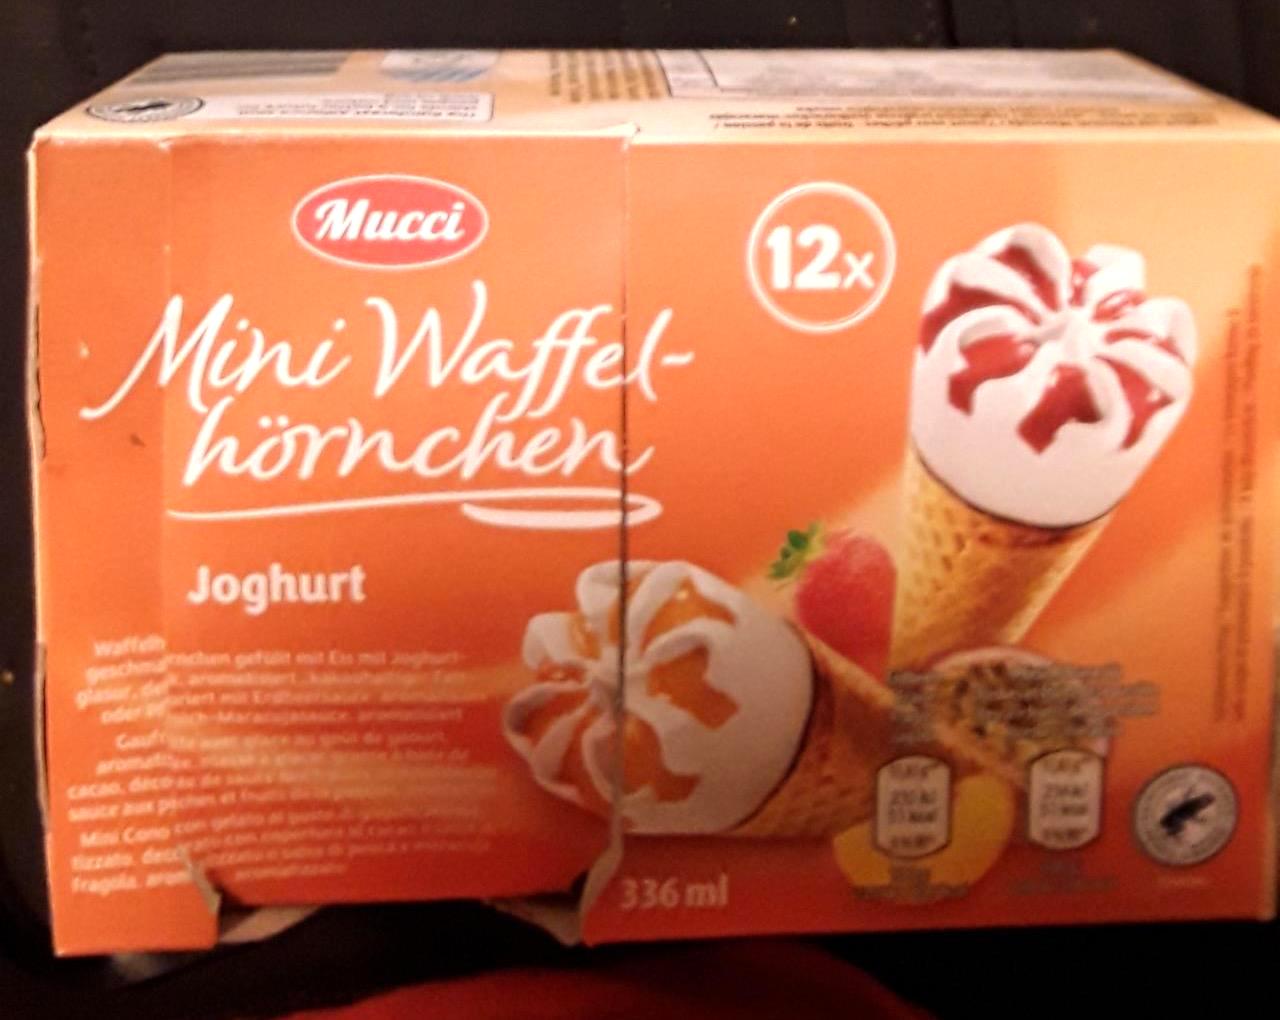 Képek - Mini Waffel-hörnchen joghurt Mucci